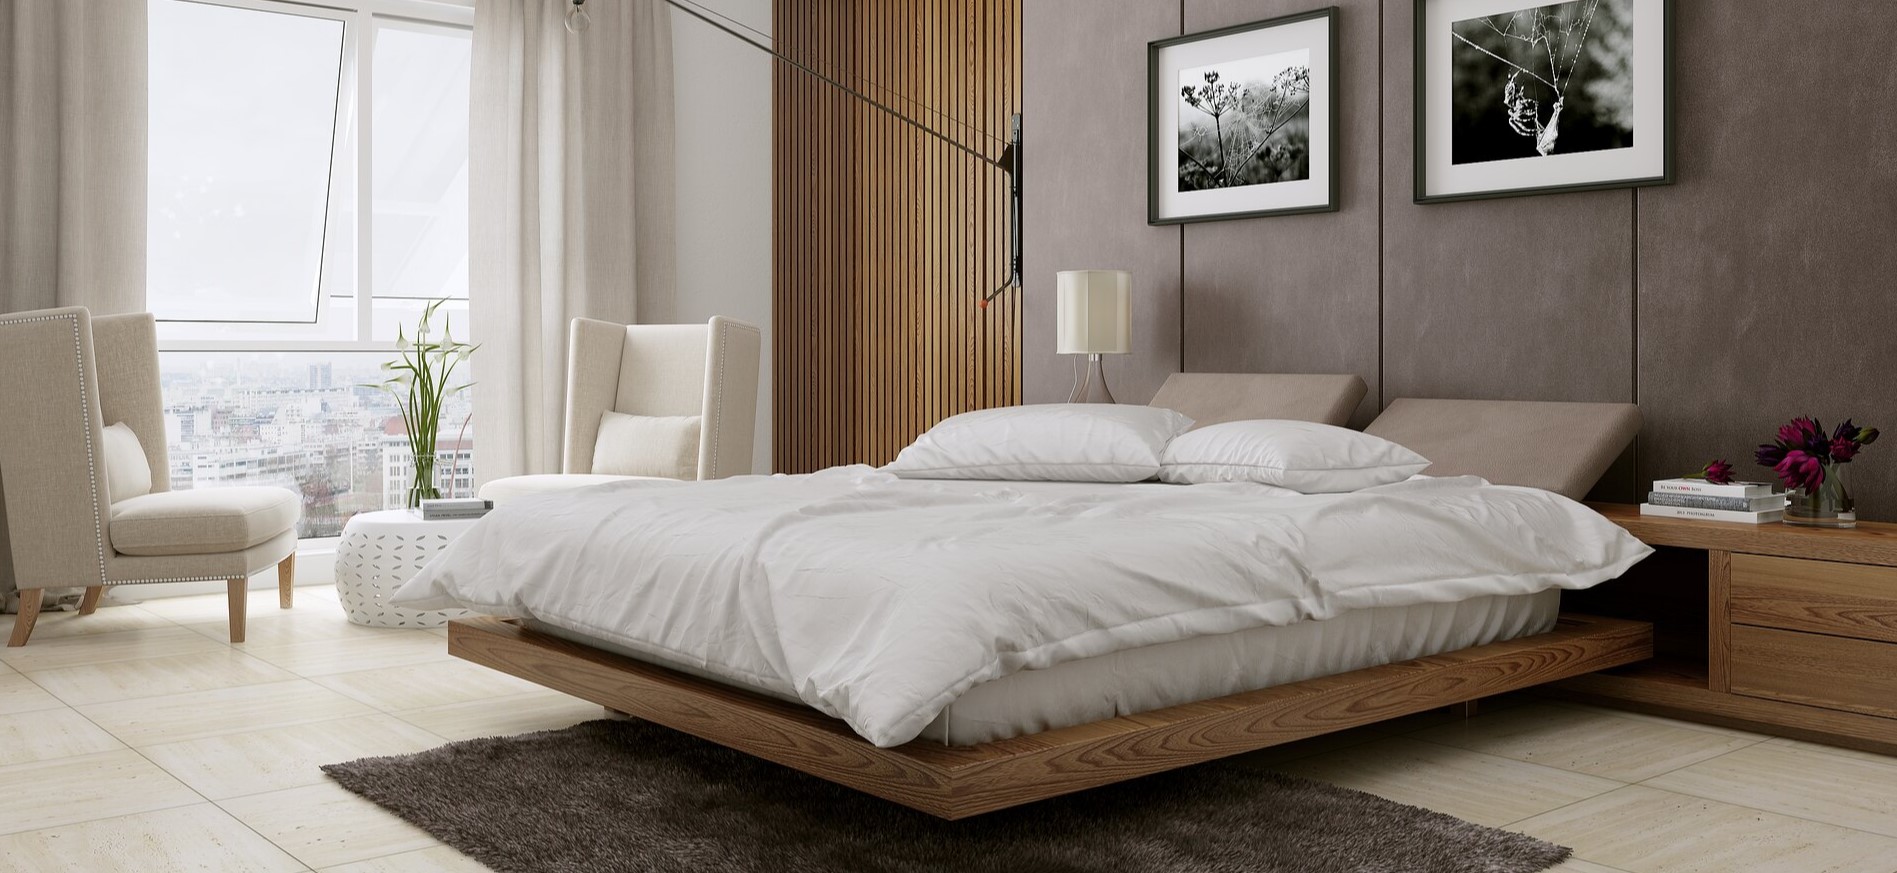 Стильная и современная кровать с дополнительными полочками для декора